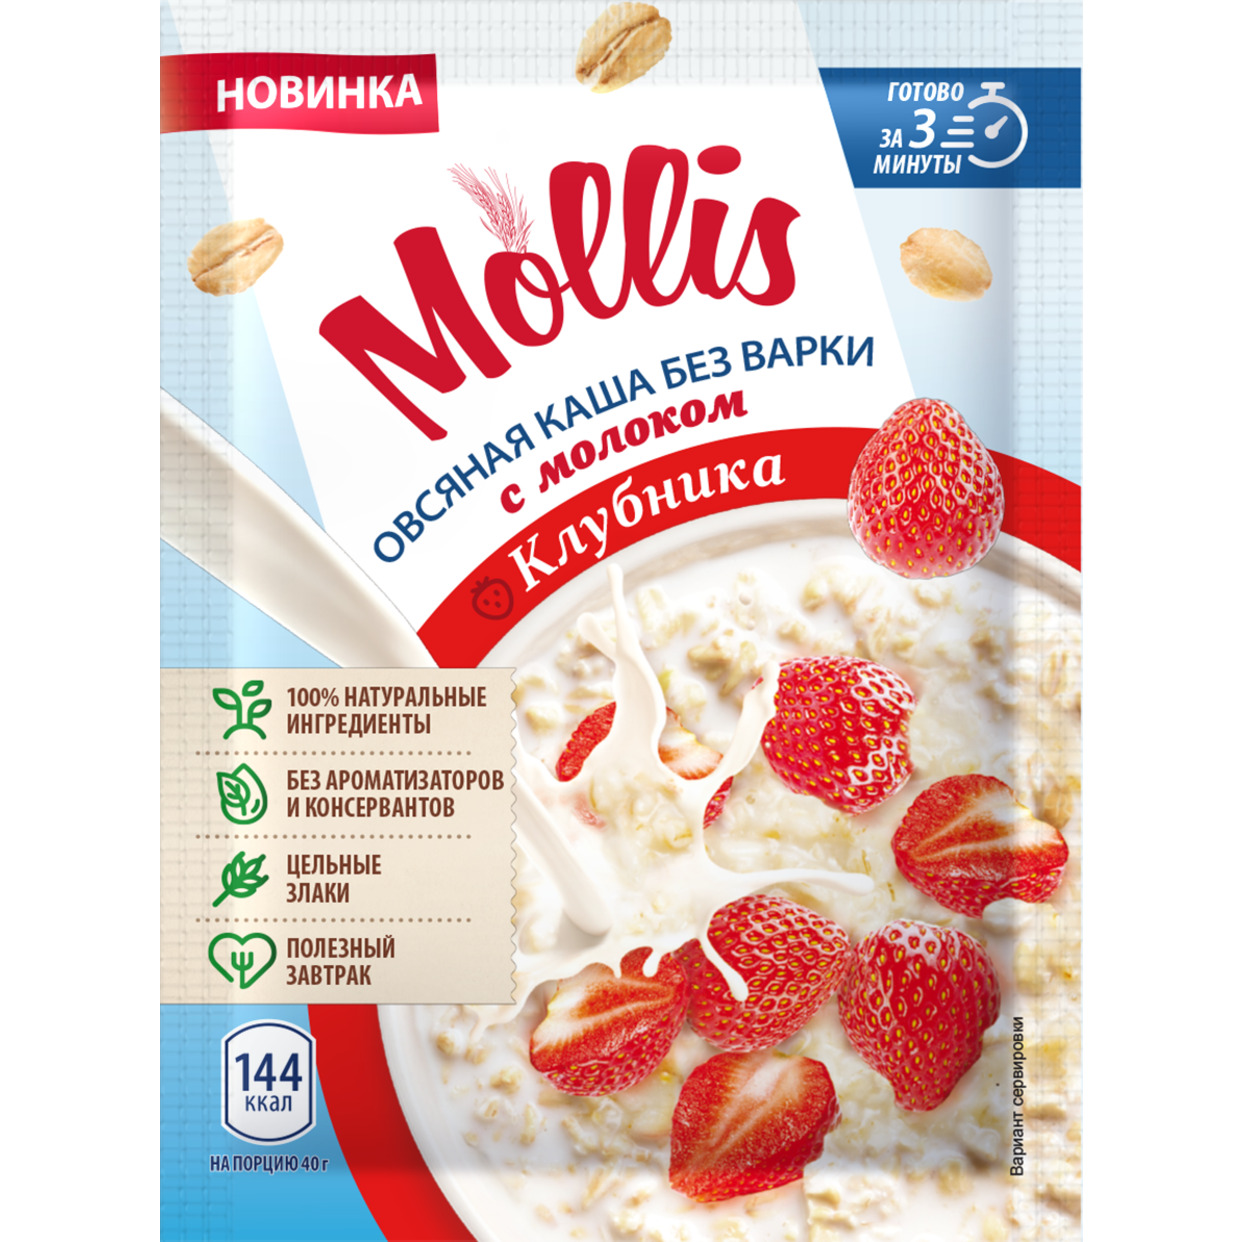 Продукт зерновой для завтрака Каша овсяная с клубникой и молоком т/м Mollis 40гр.